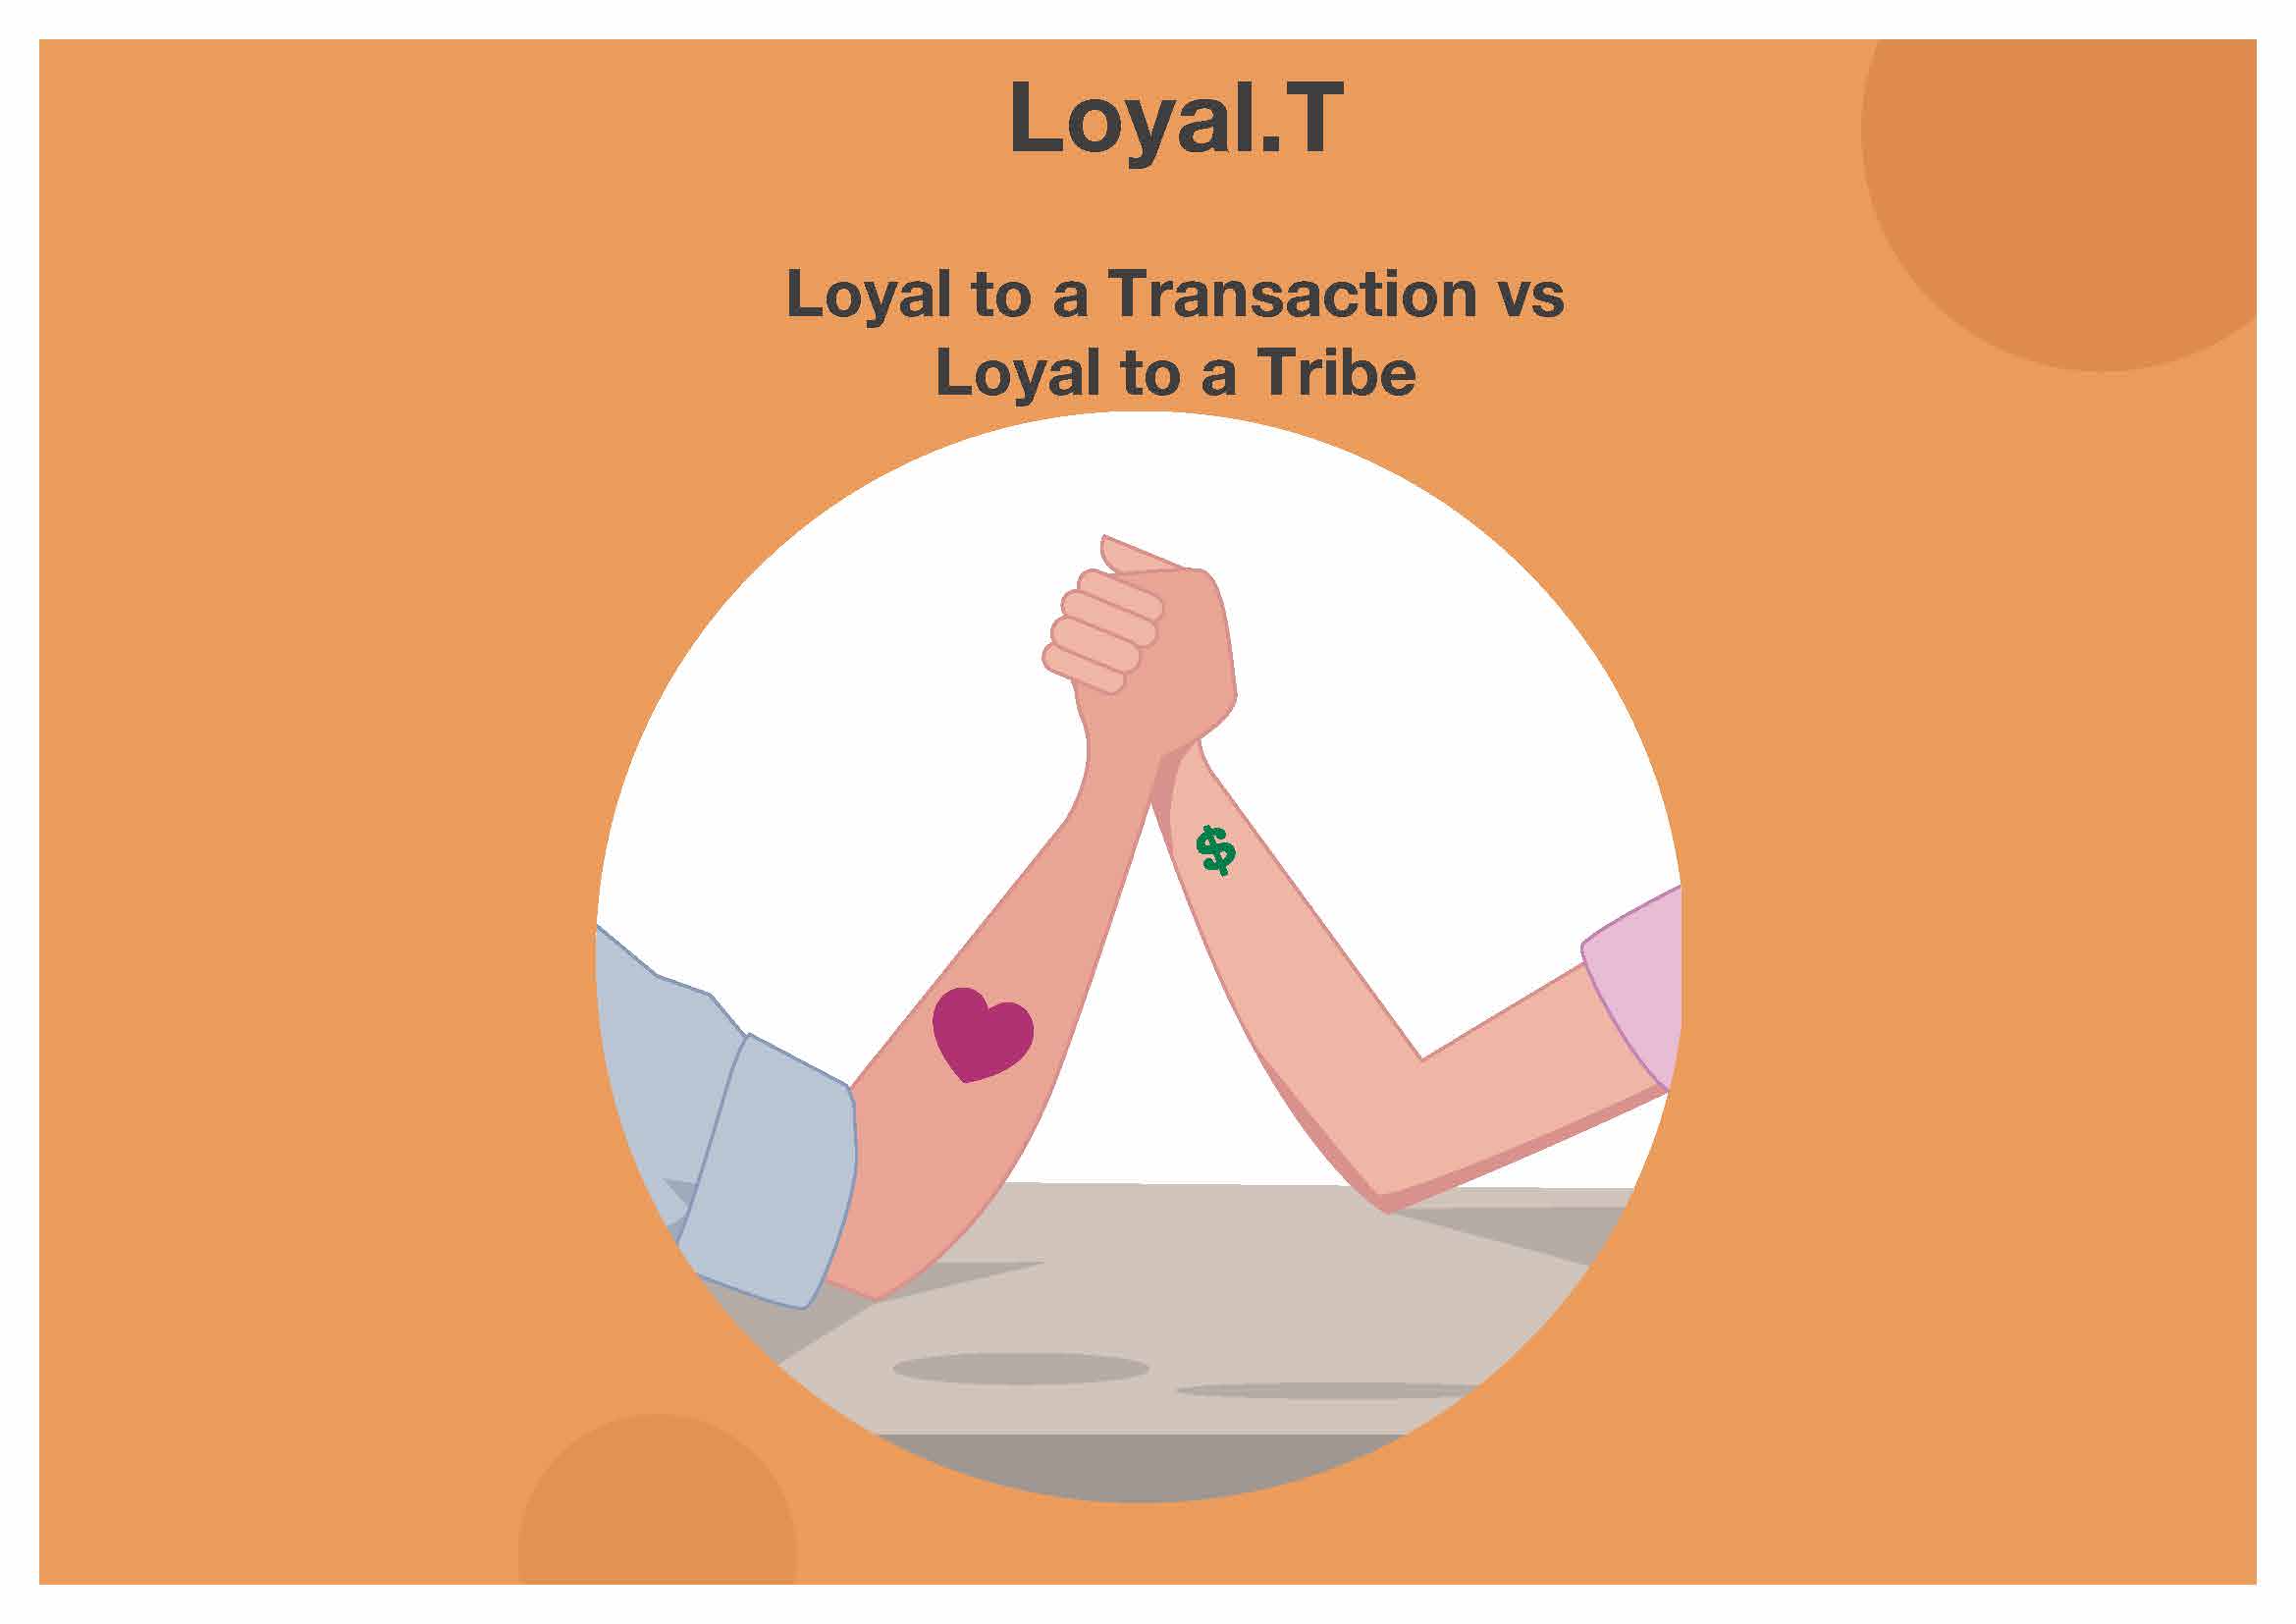 Loyal.T: Loyal to a Transaction vs Loyal to a Tribe